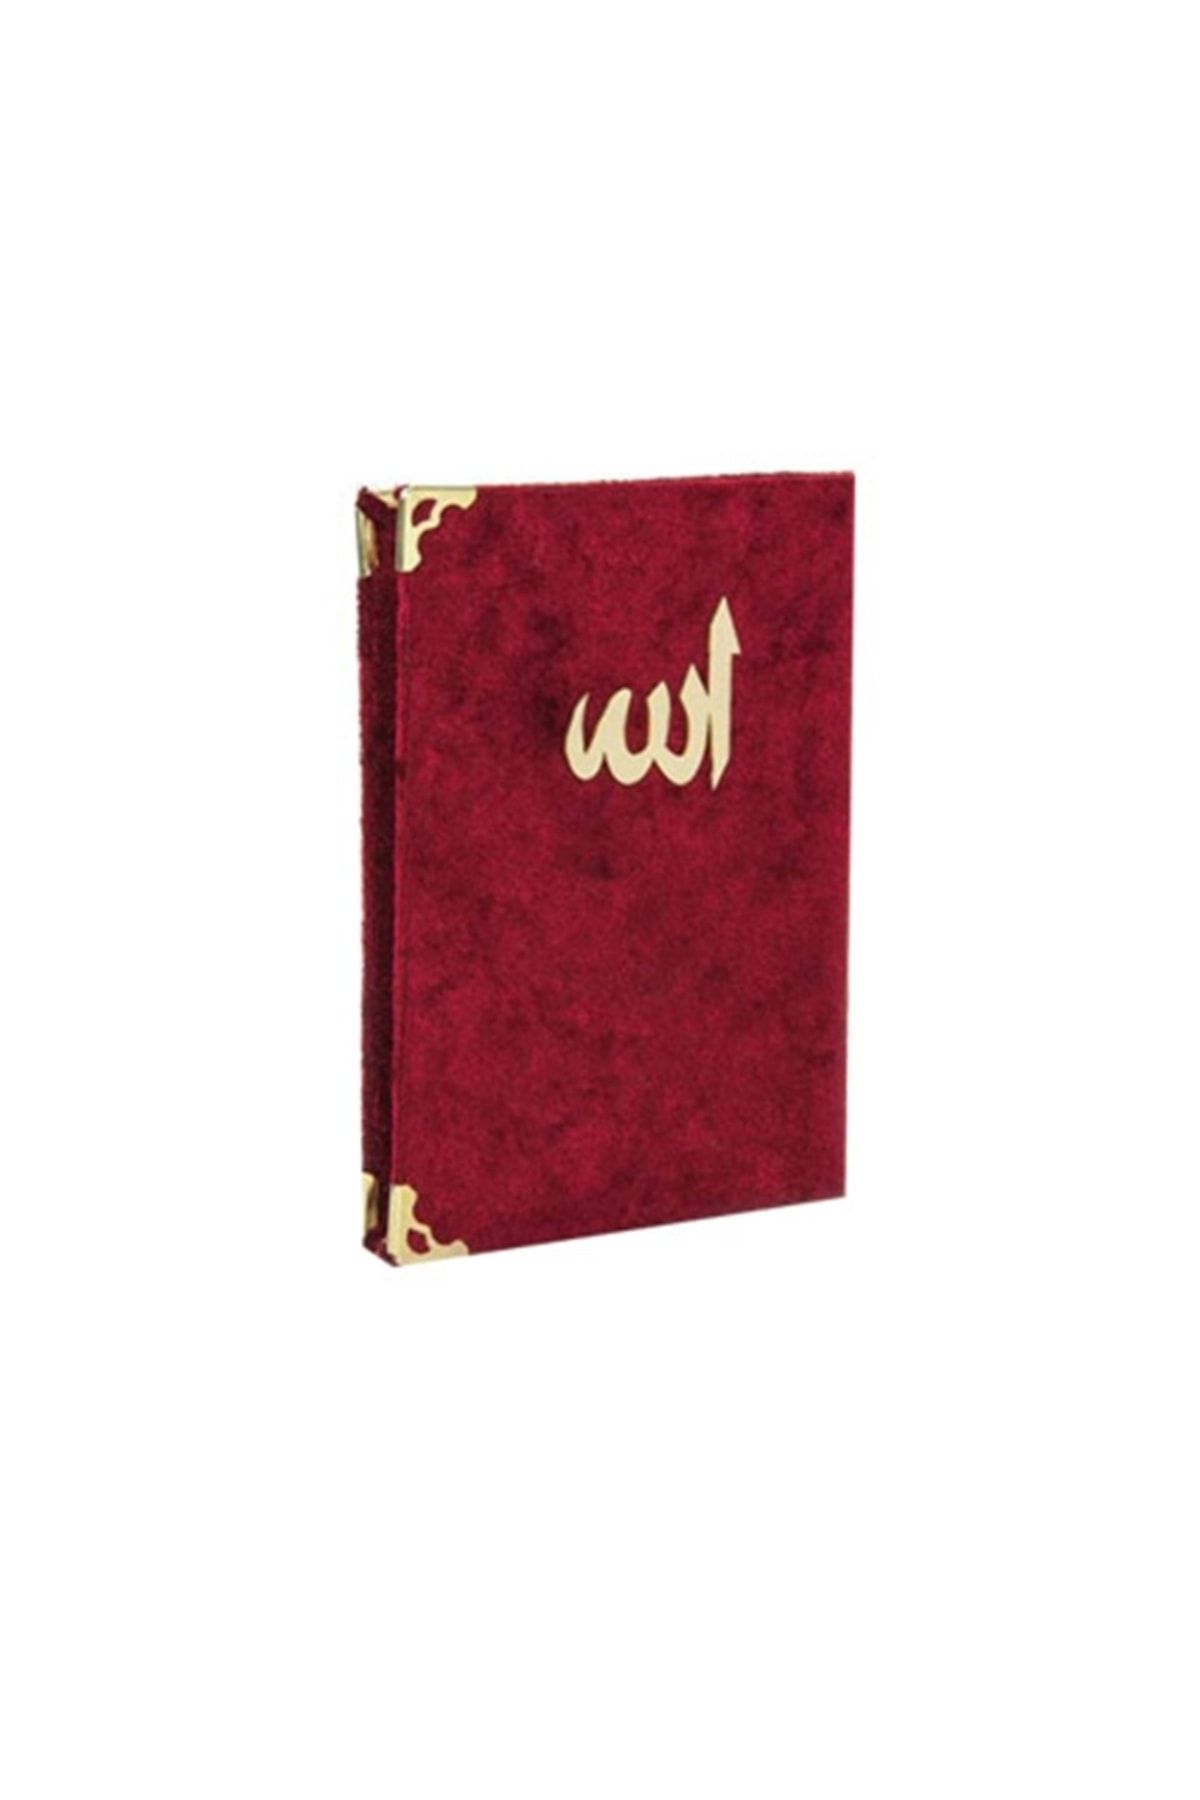 Cansüs 5li Kadife Kaplı Allah Yazılı Yasin Kitabı12x17 Cm Bordo (paket Içeriği:5 Adet)